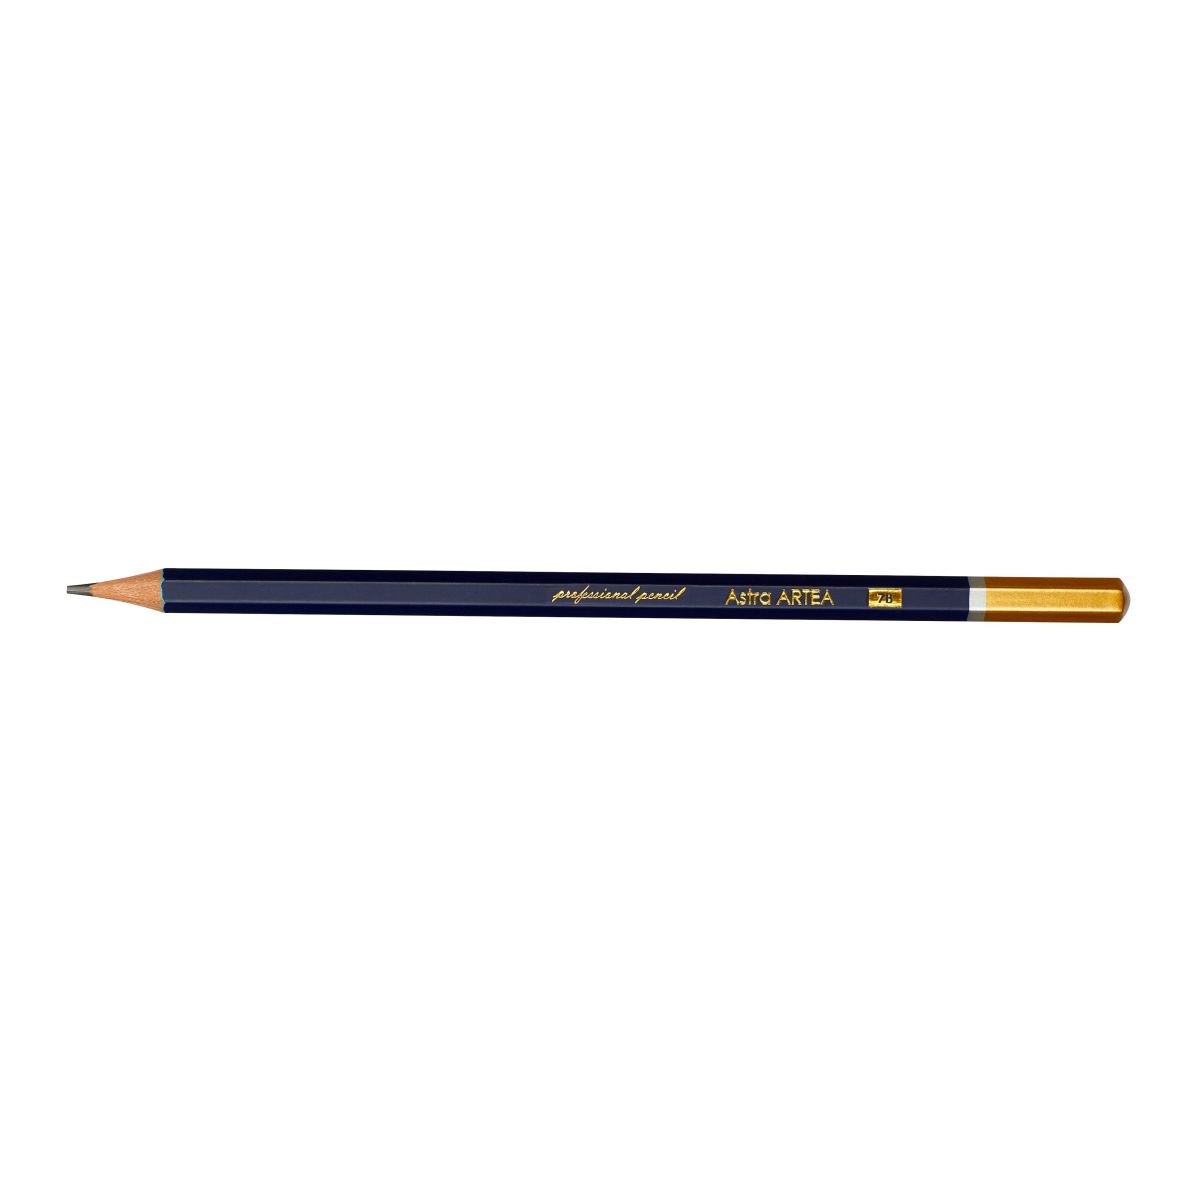 Ołówek Artea 7B